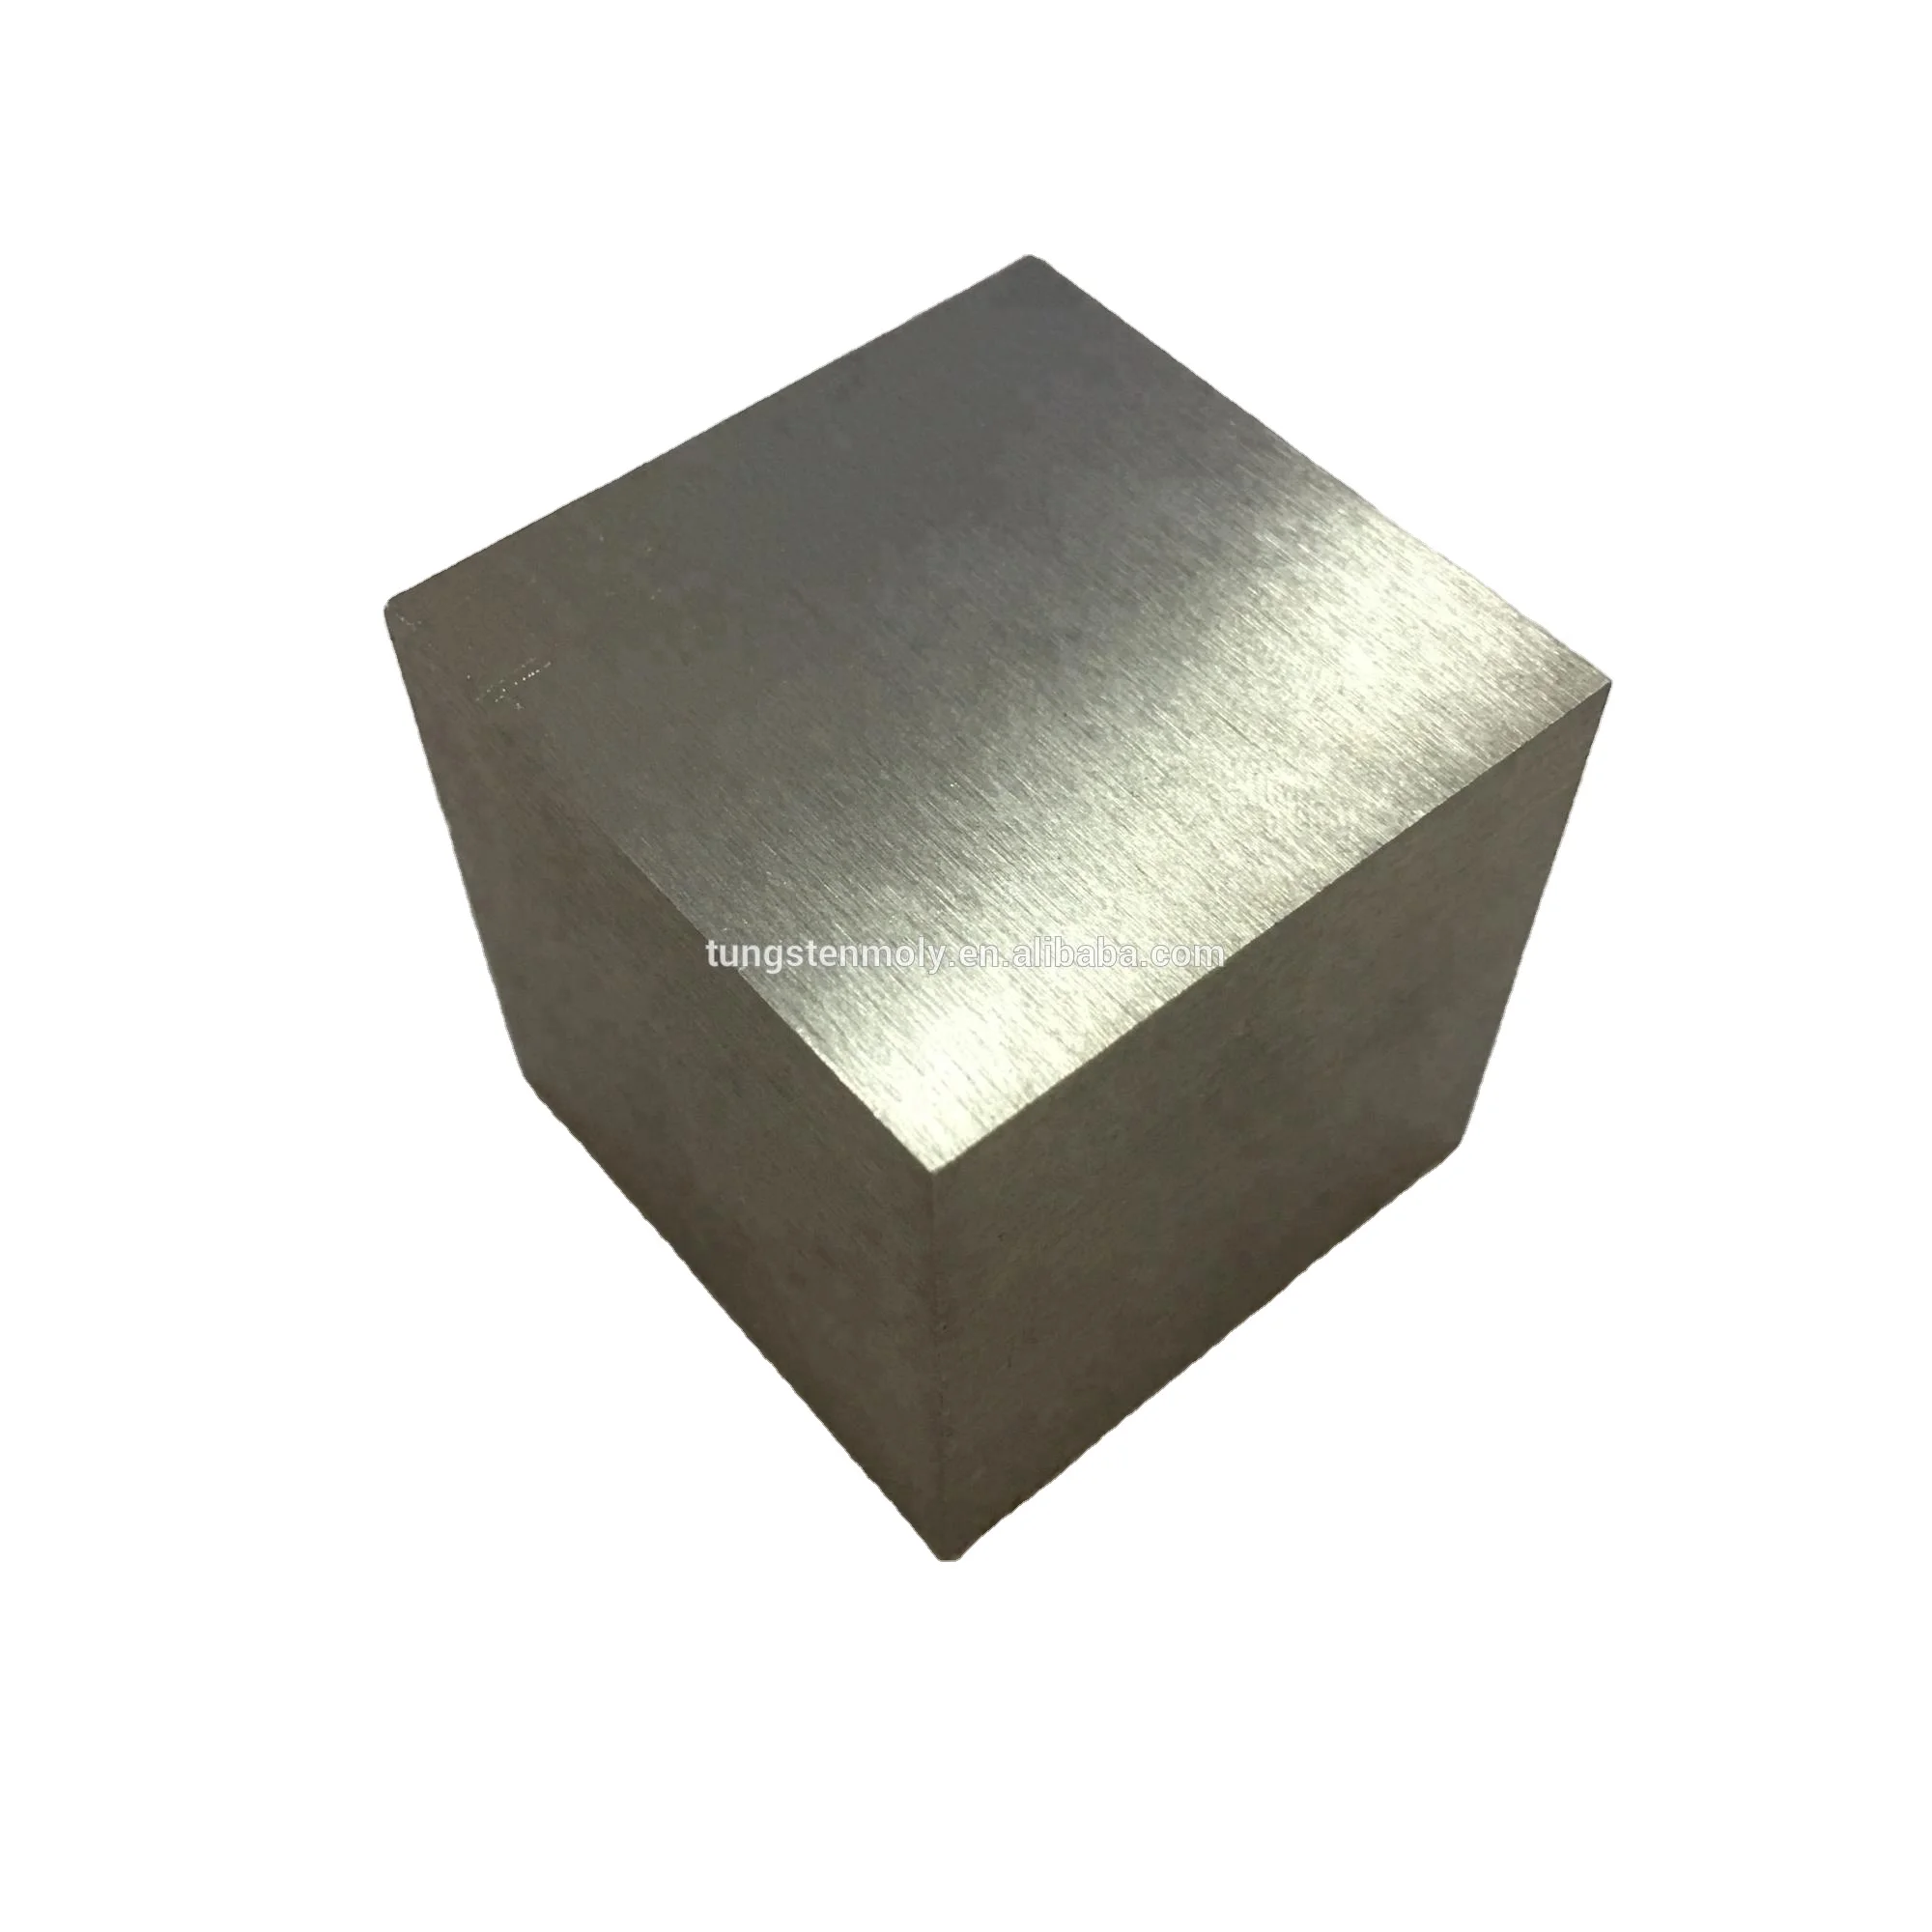 Hot sale tungsten alloy 1.5 inch tungsten weight cubes